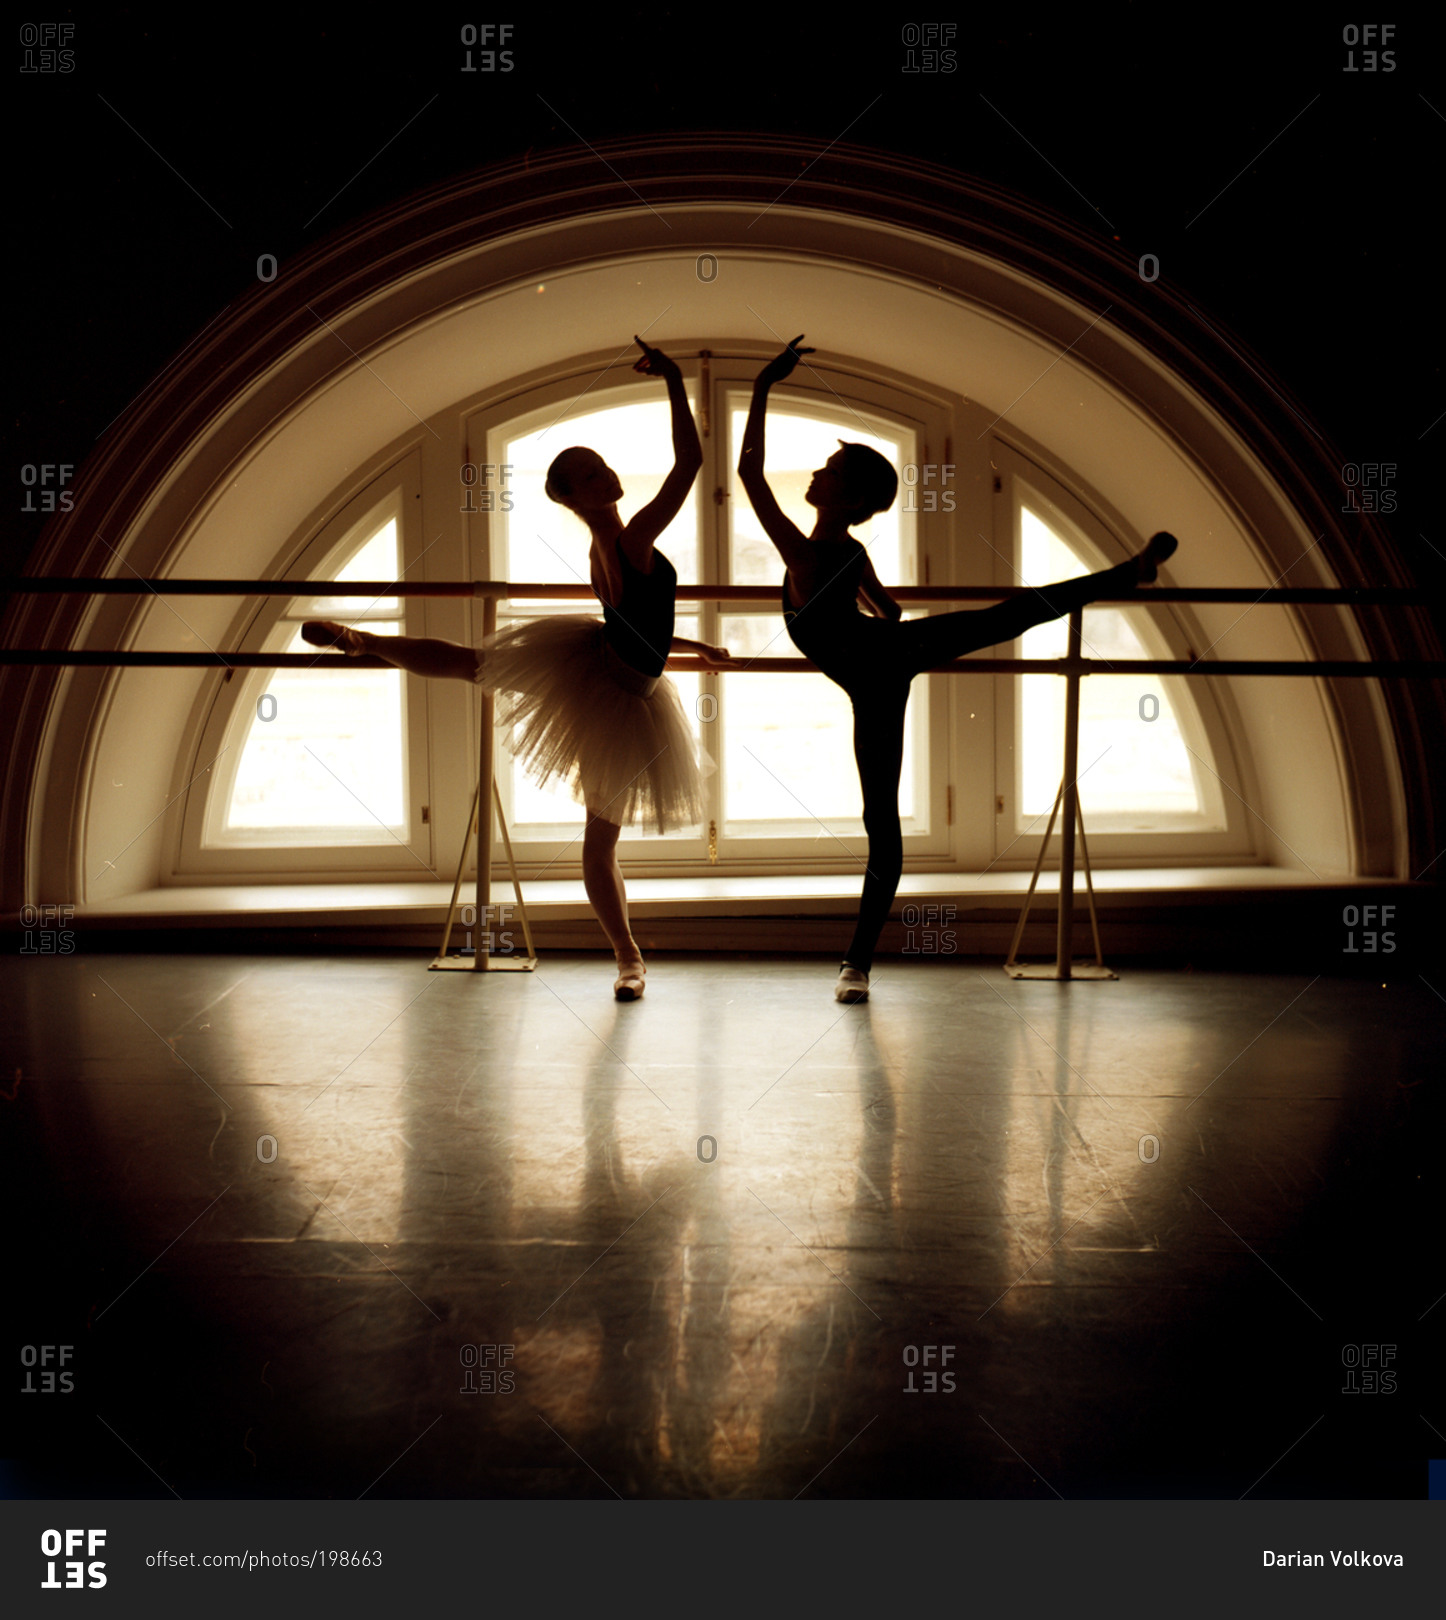 Pair of dancers in arabesque in front of window